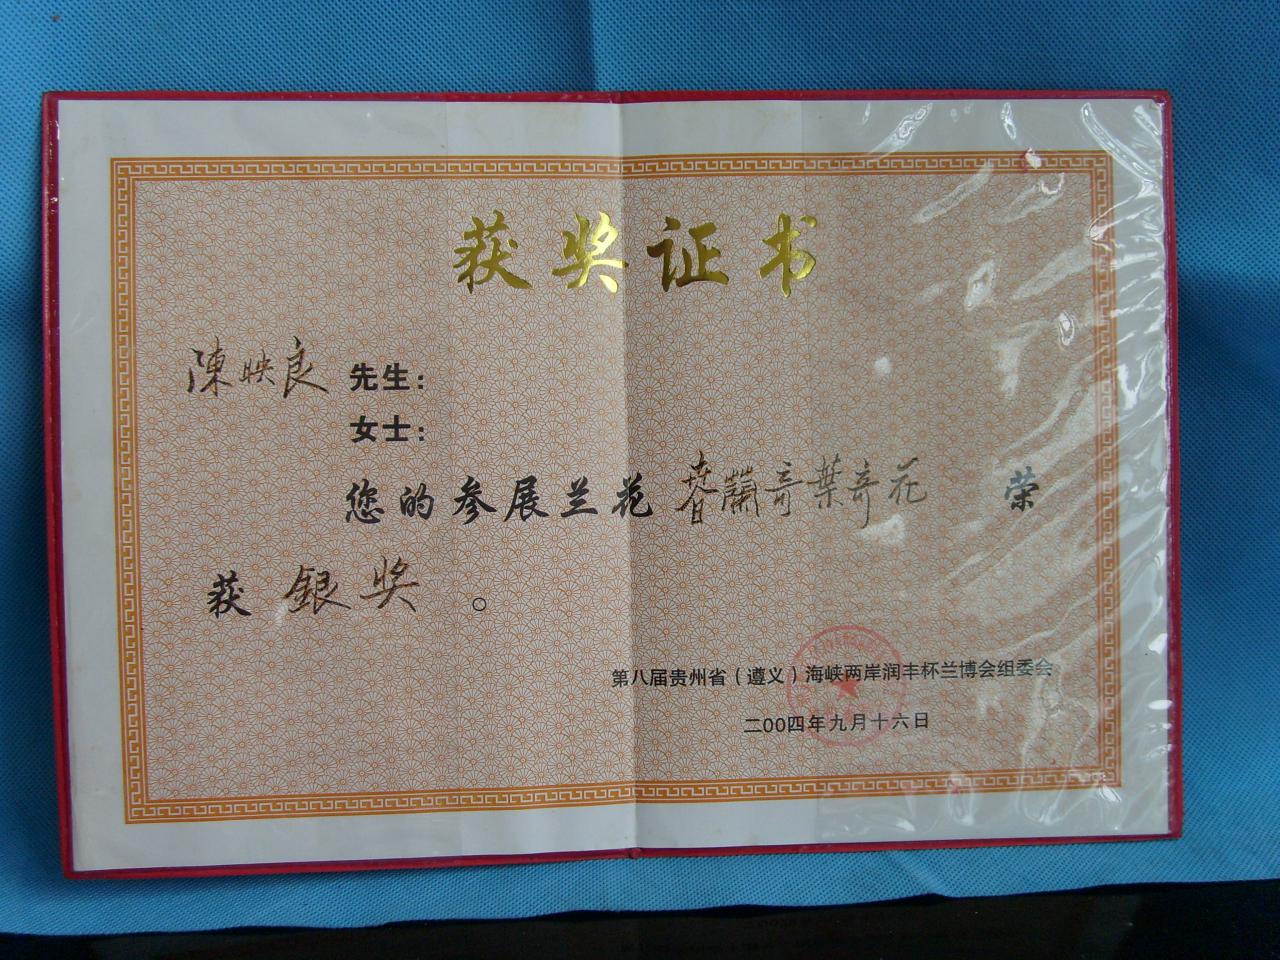 2004年第八届贵州省遵义海峡两岸（润丰杯）兰花博览会-奇叶奇花-铜奖